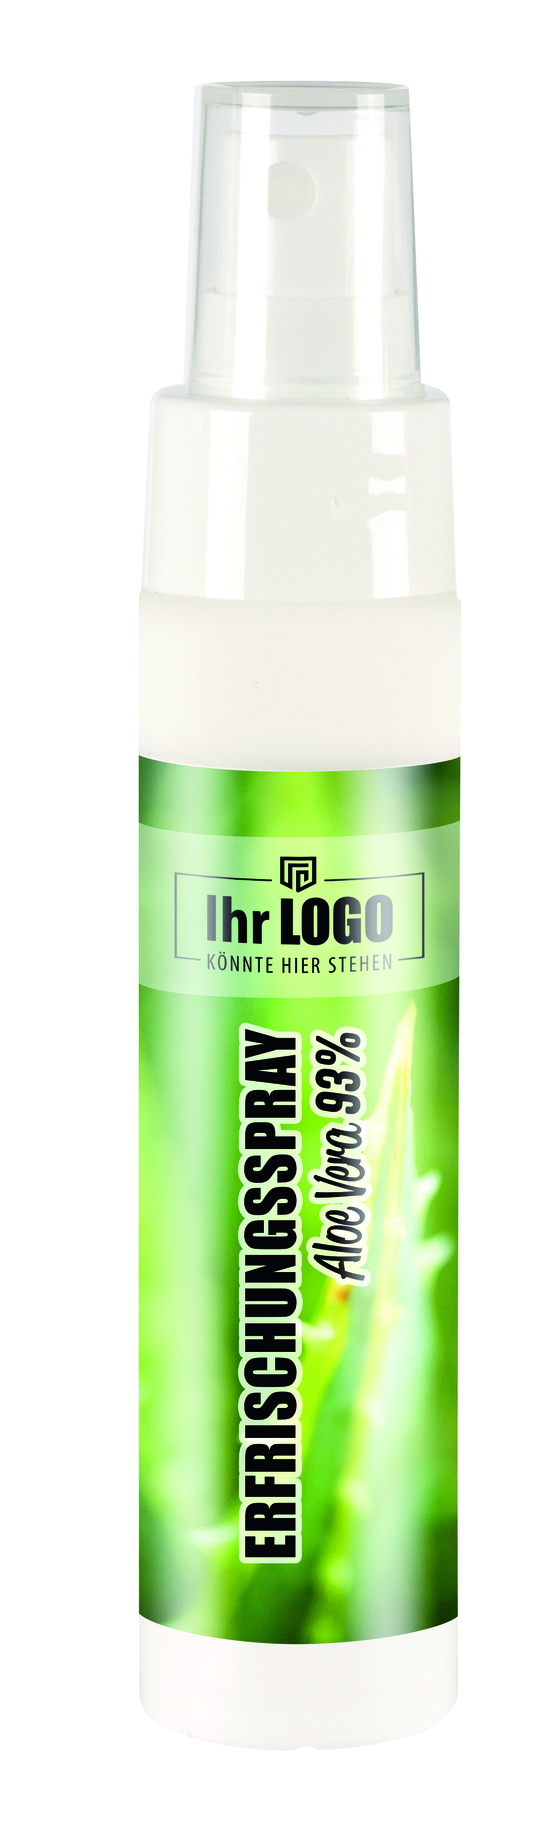 50 ml Sprayflasche "Slim" mit Sonnenschutz-Spray "Sensitiv" LSF 50